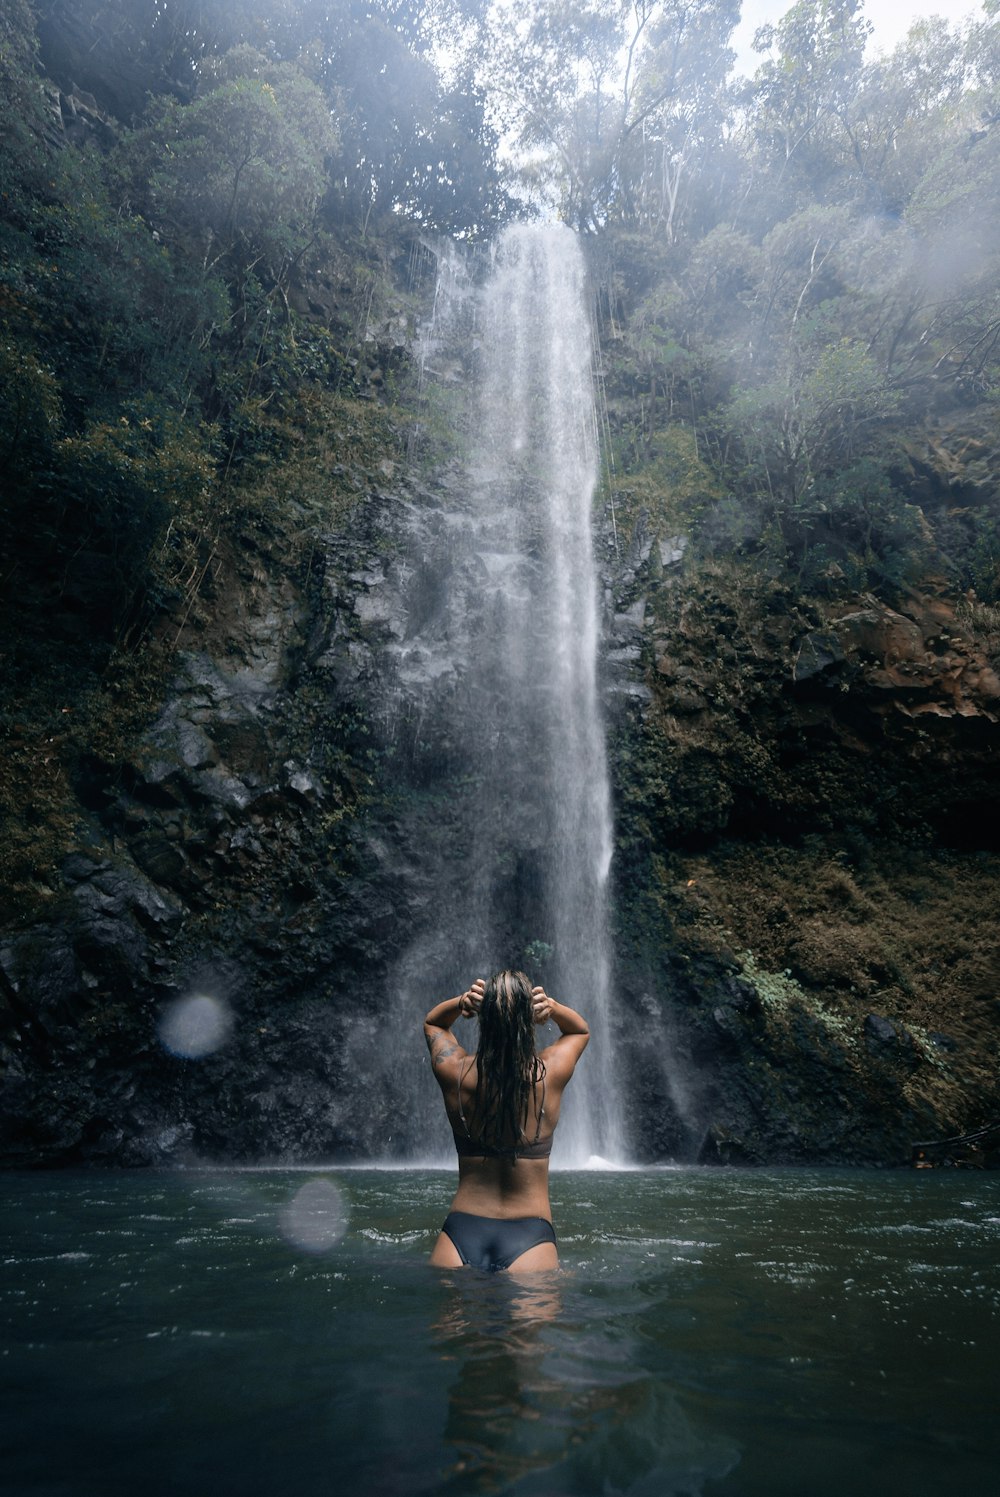 Una donna in piedi nell'acqua di fronte a una cascata